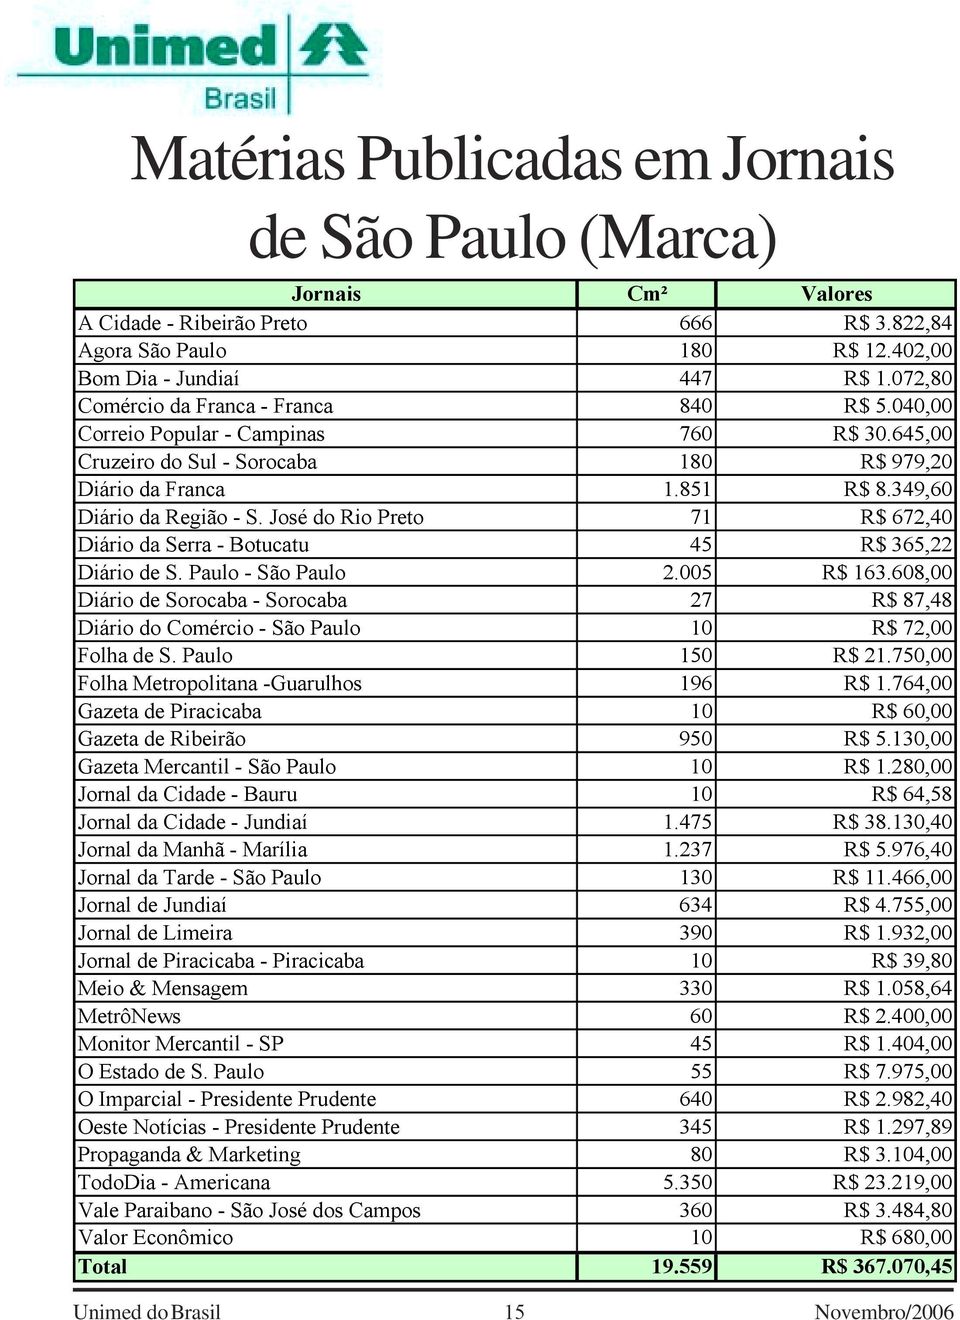 José do Rio Preto 71 R$ 672,40 Diário da Serra - Botucatu 45 R$ 365,22 Diário de S. Paulo - São Paulo 2.005 R$ 163.